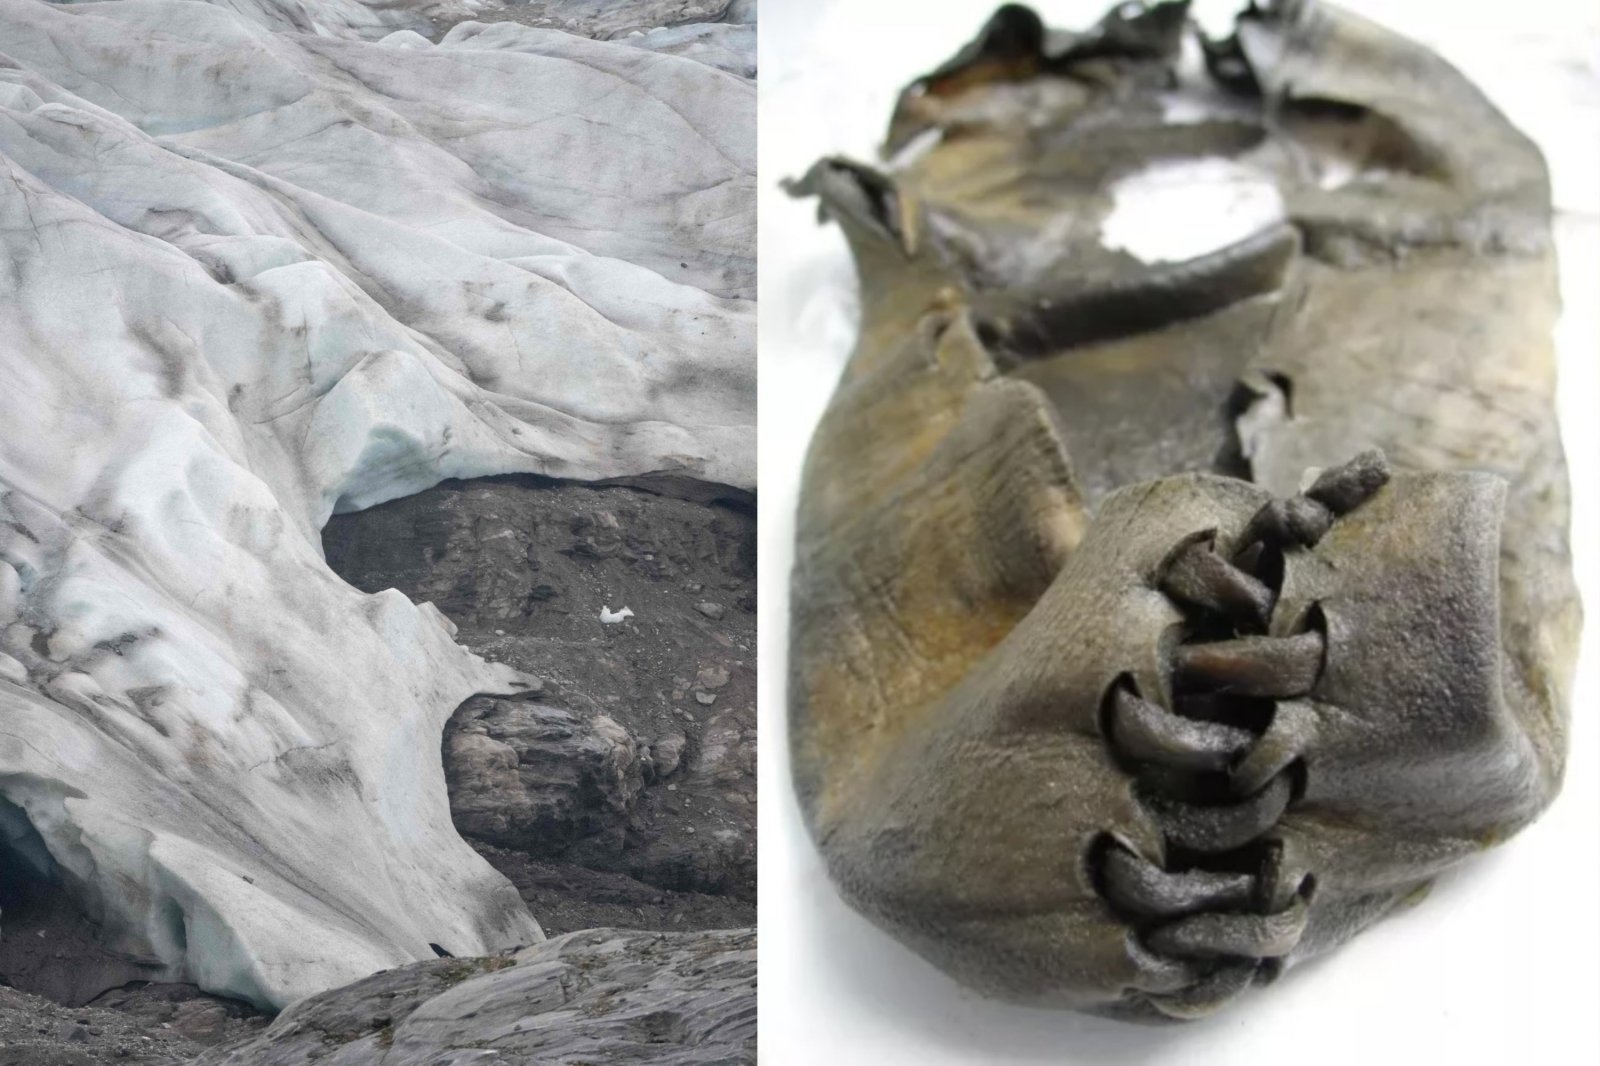 Et godt bevart funn er oppdaget etter isbreens smelting i Norge: arkeologer har oppdaget en skinnsko som ble brukt for 3000 år siden